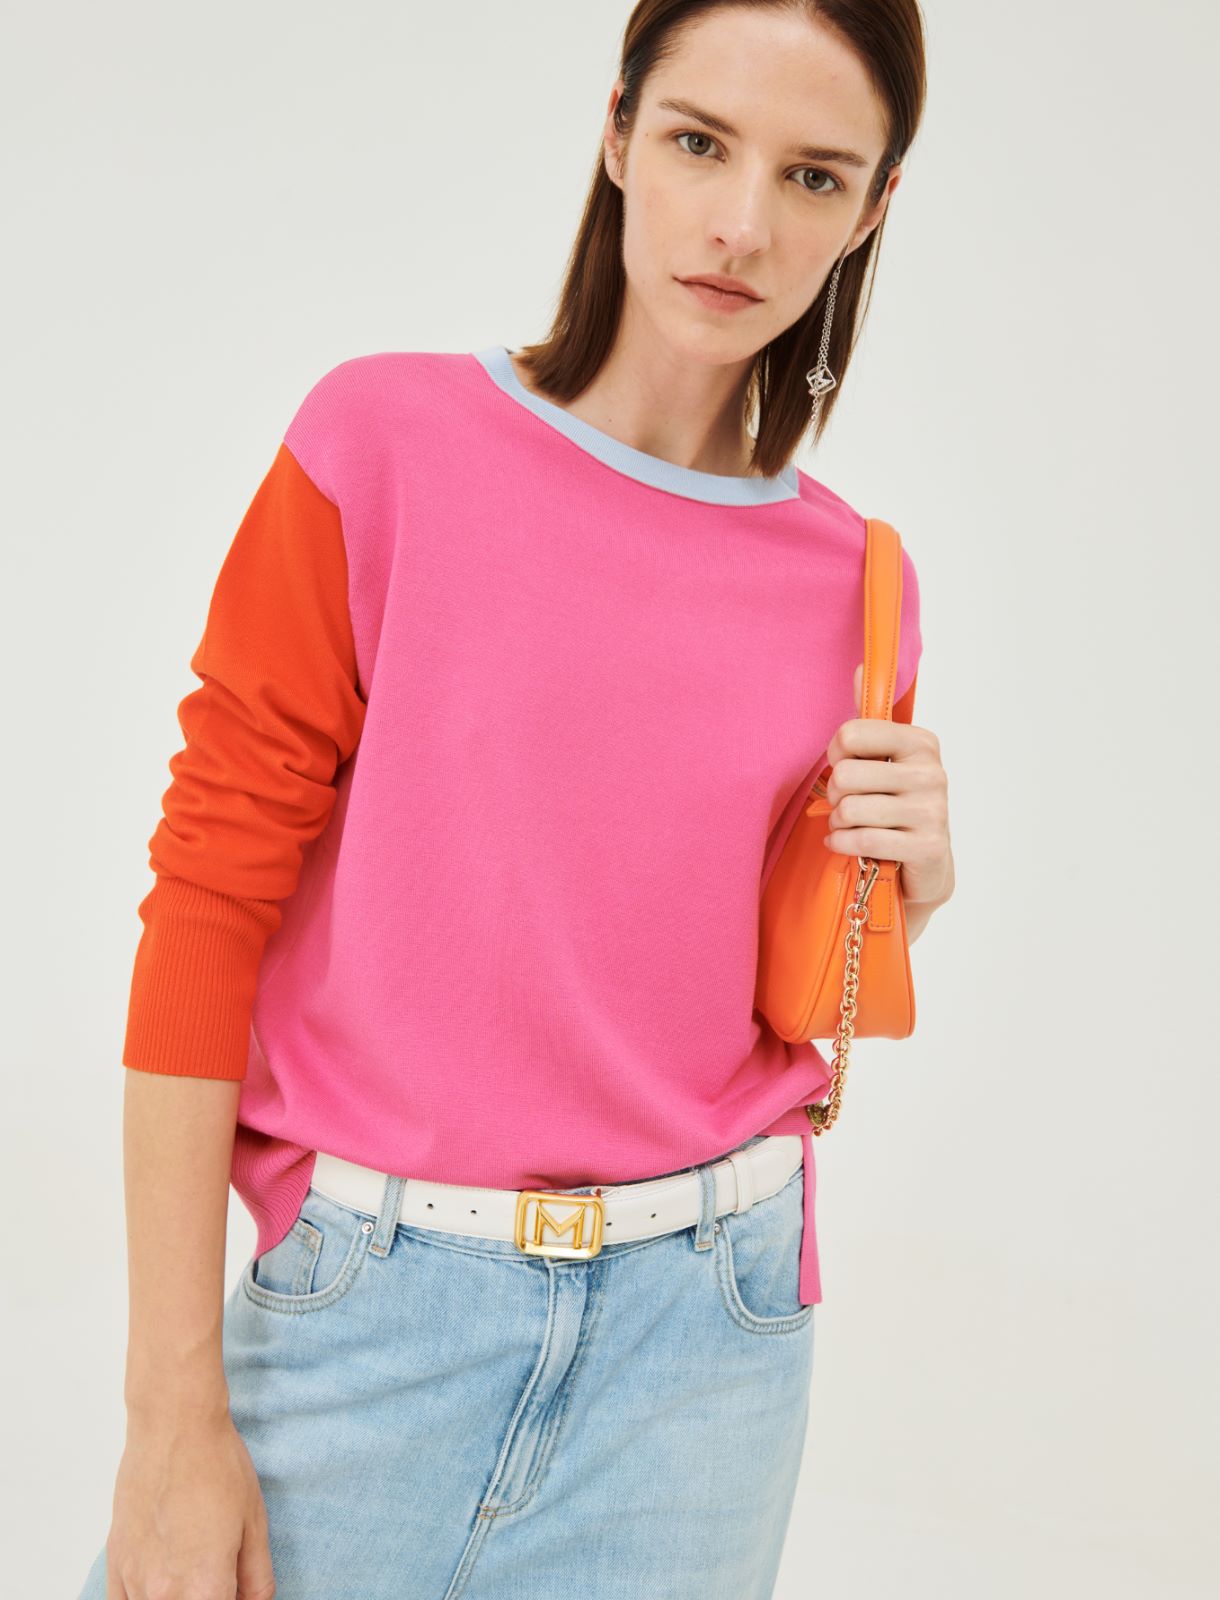 Stockinette-stitched sweater - Shocking pink - Marina Rinaldi - 3